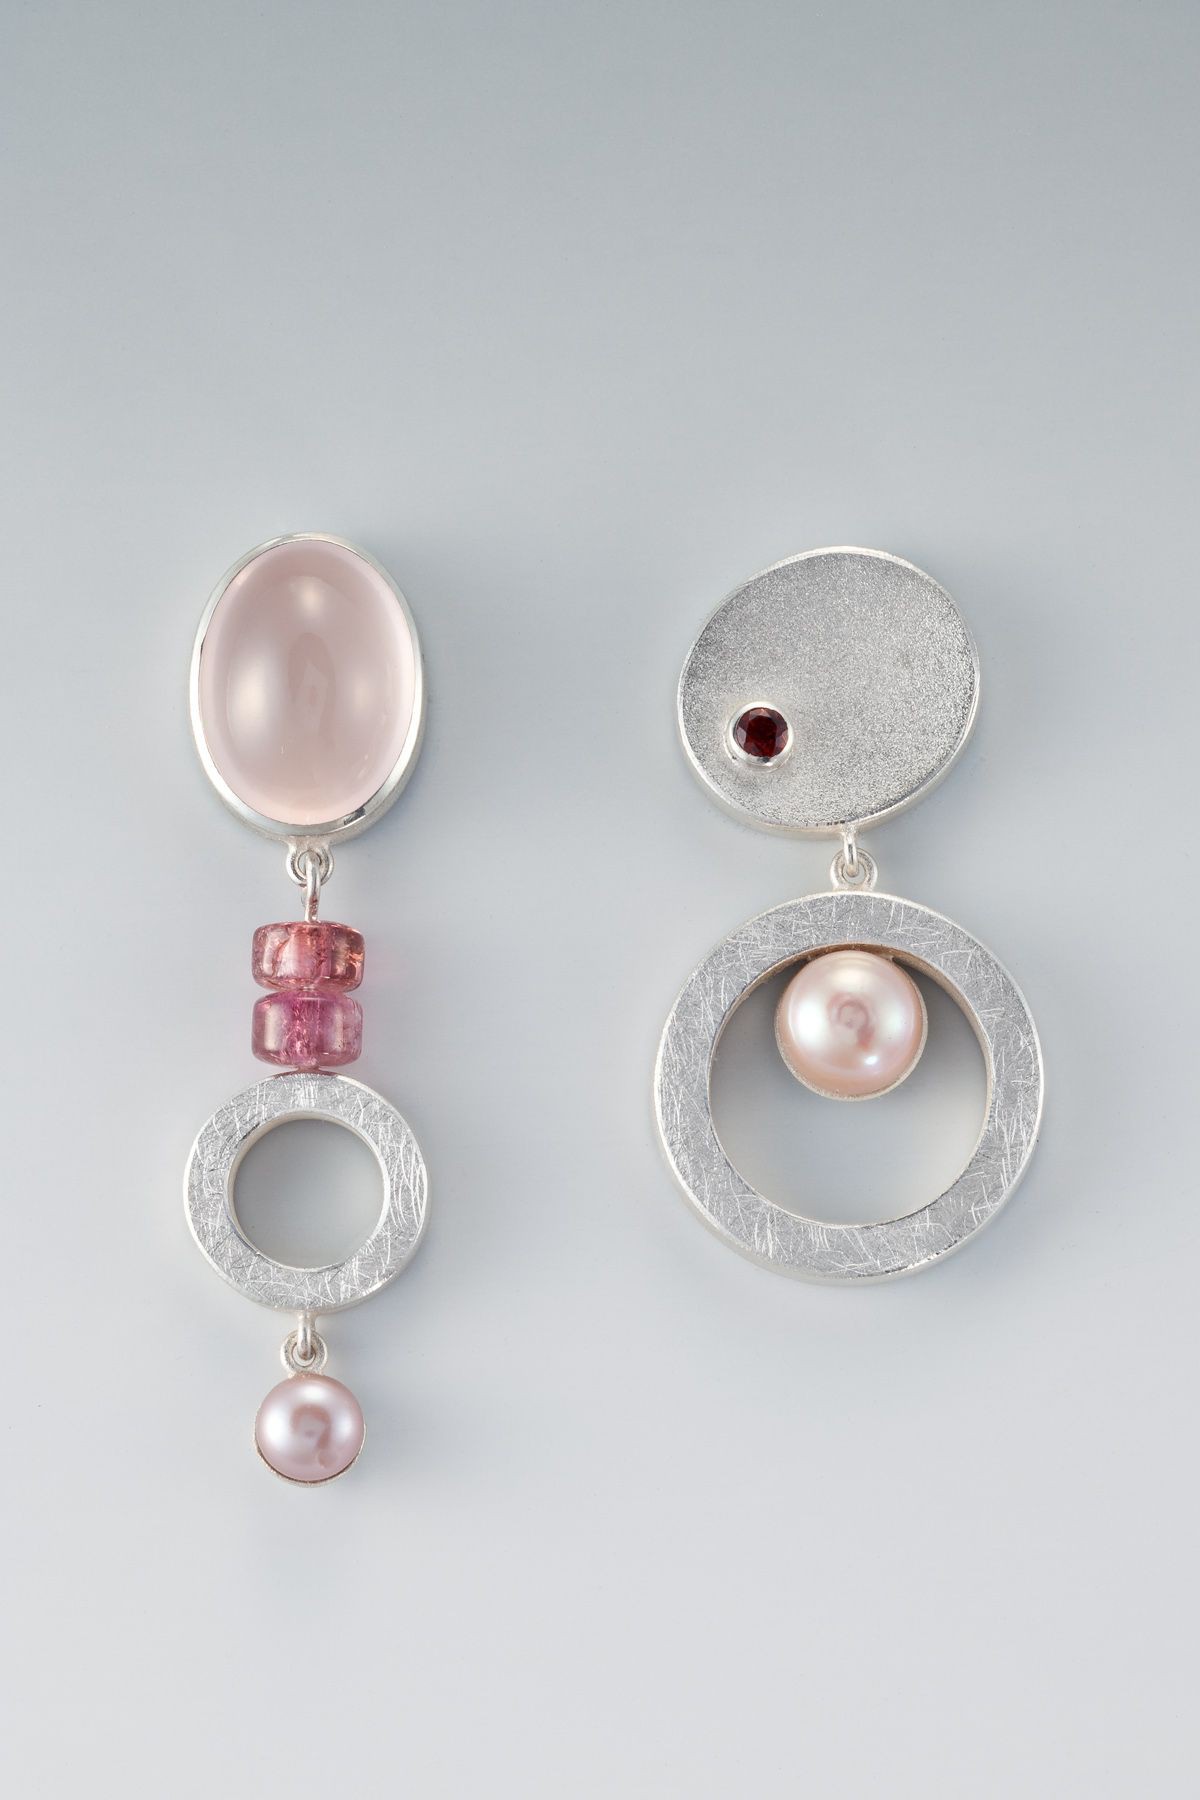 Sea Glass Asymmetrical Earrings, Body piercing jewellery, Jewelry design: Earrings,  Fashion accessory,  Jewelry design  